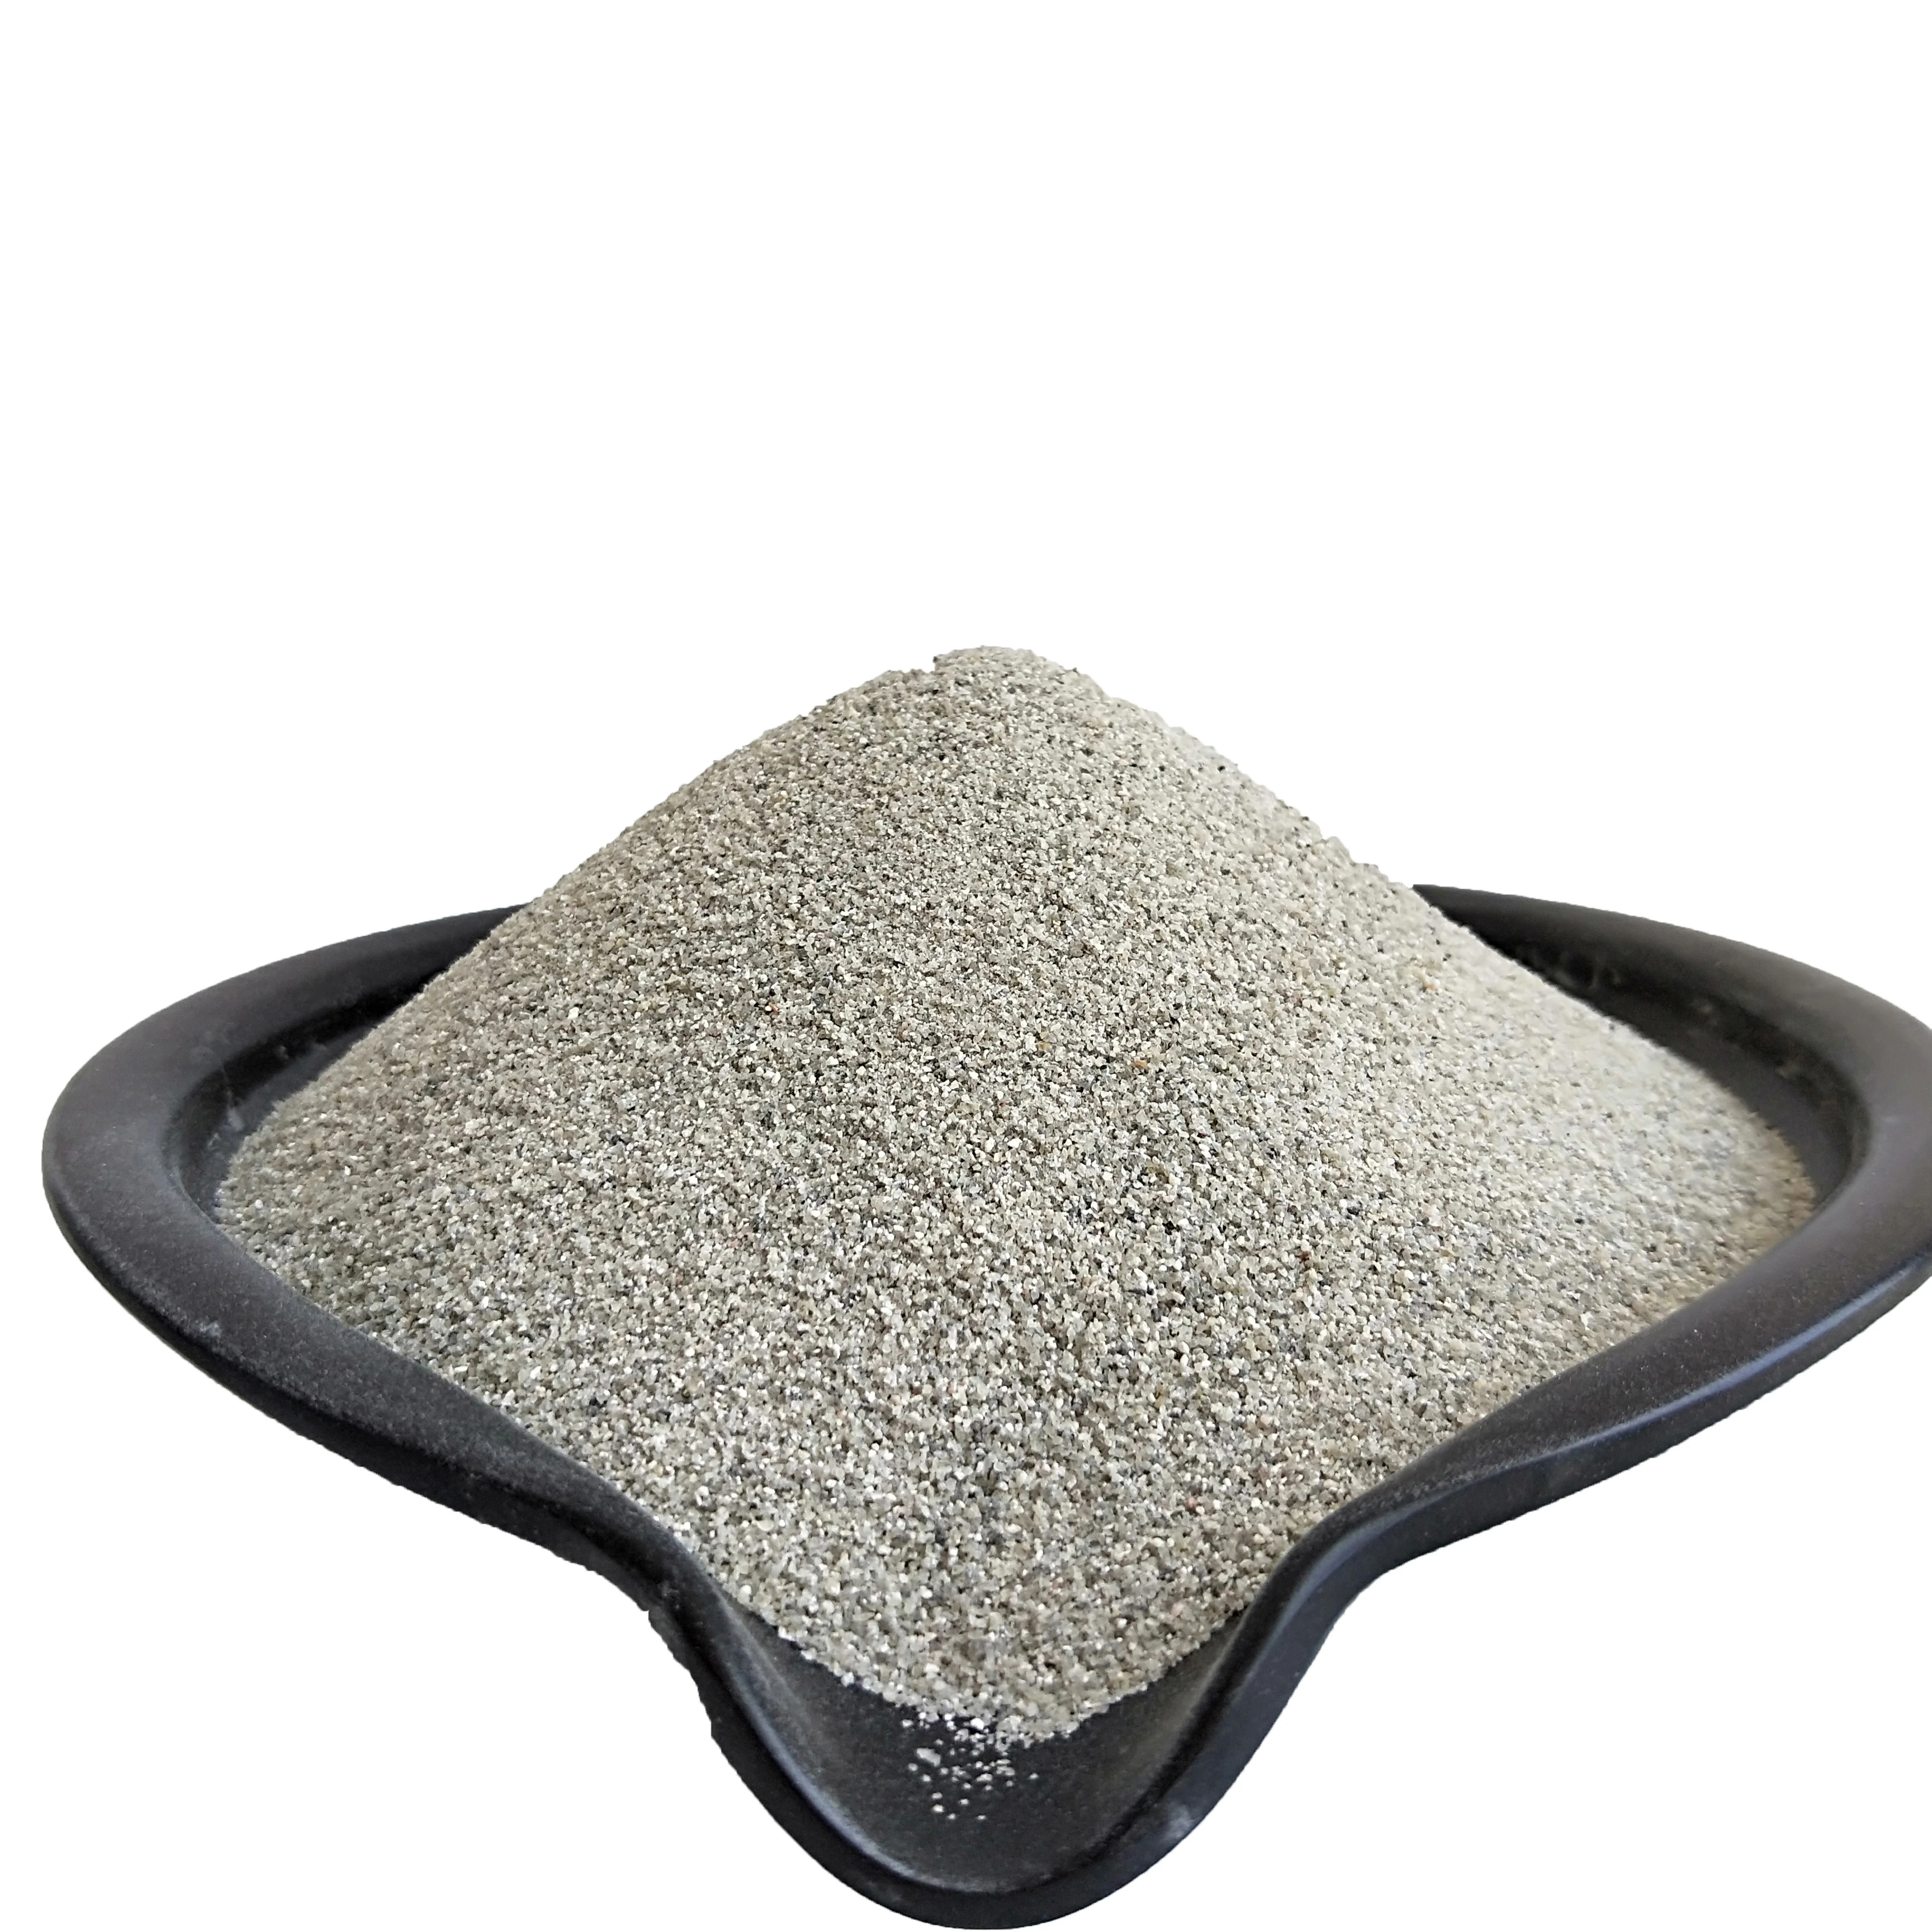 perlite slag sand  perlite ore for industry